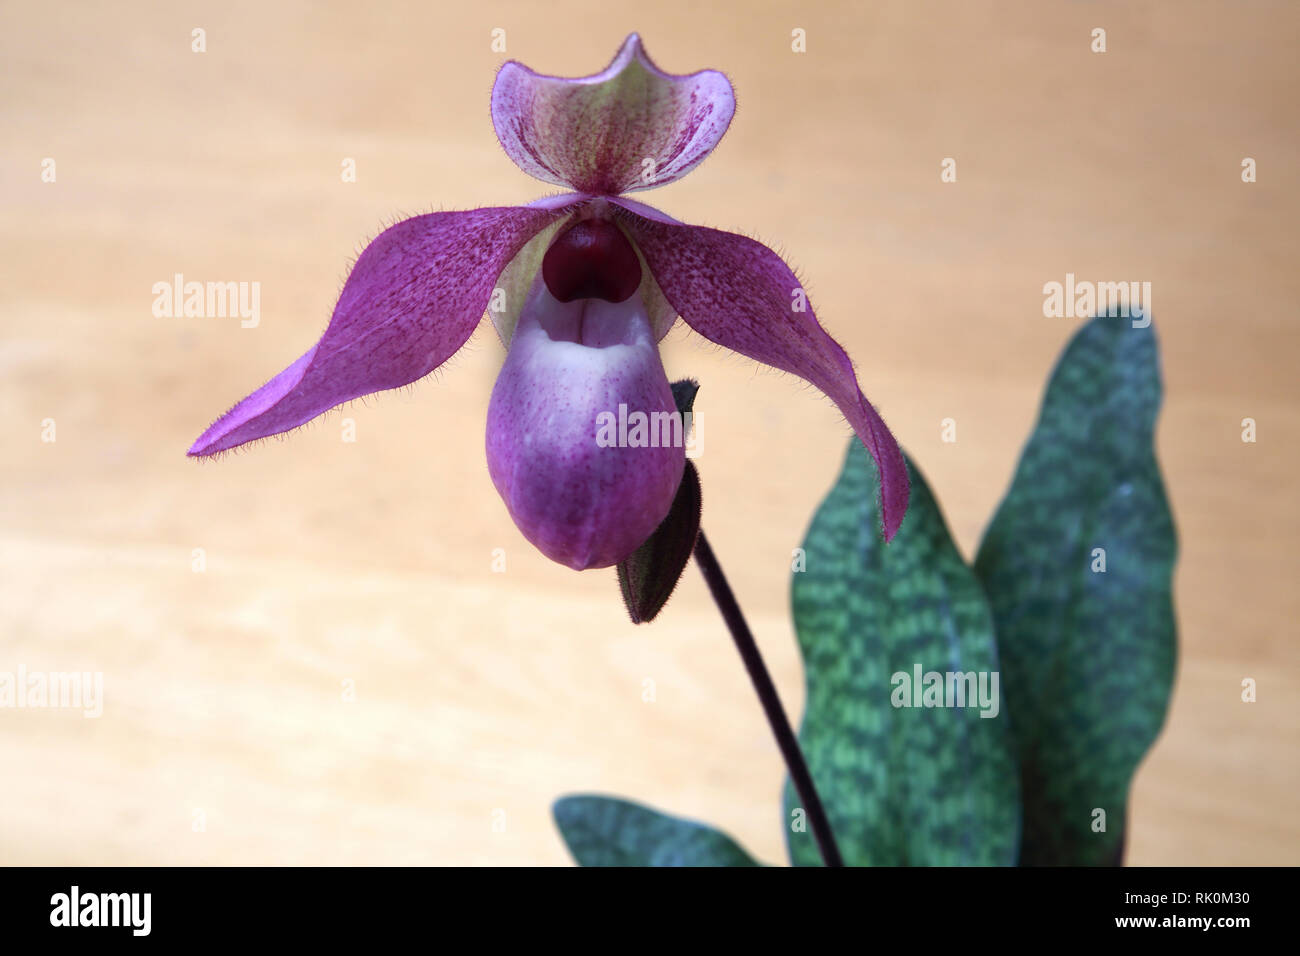 Rare Paphiopedilum deloph.(delenatii x glaucophyllum) orchid plant  in bloom Stock Photo